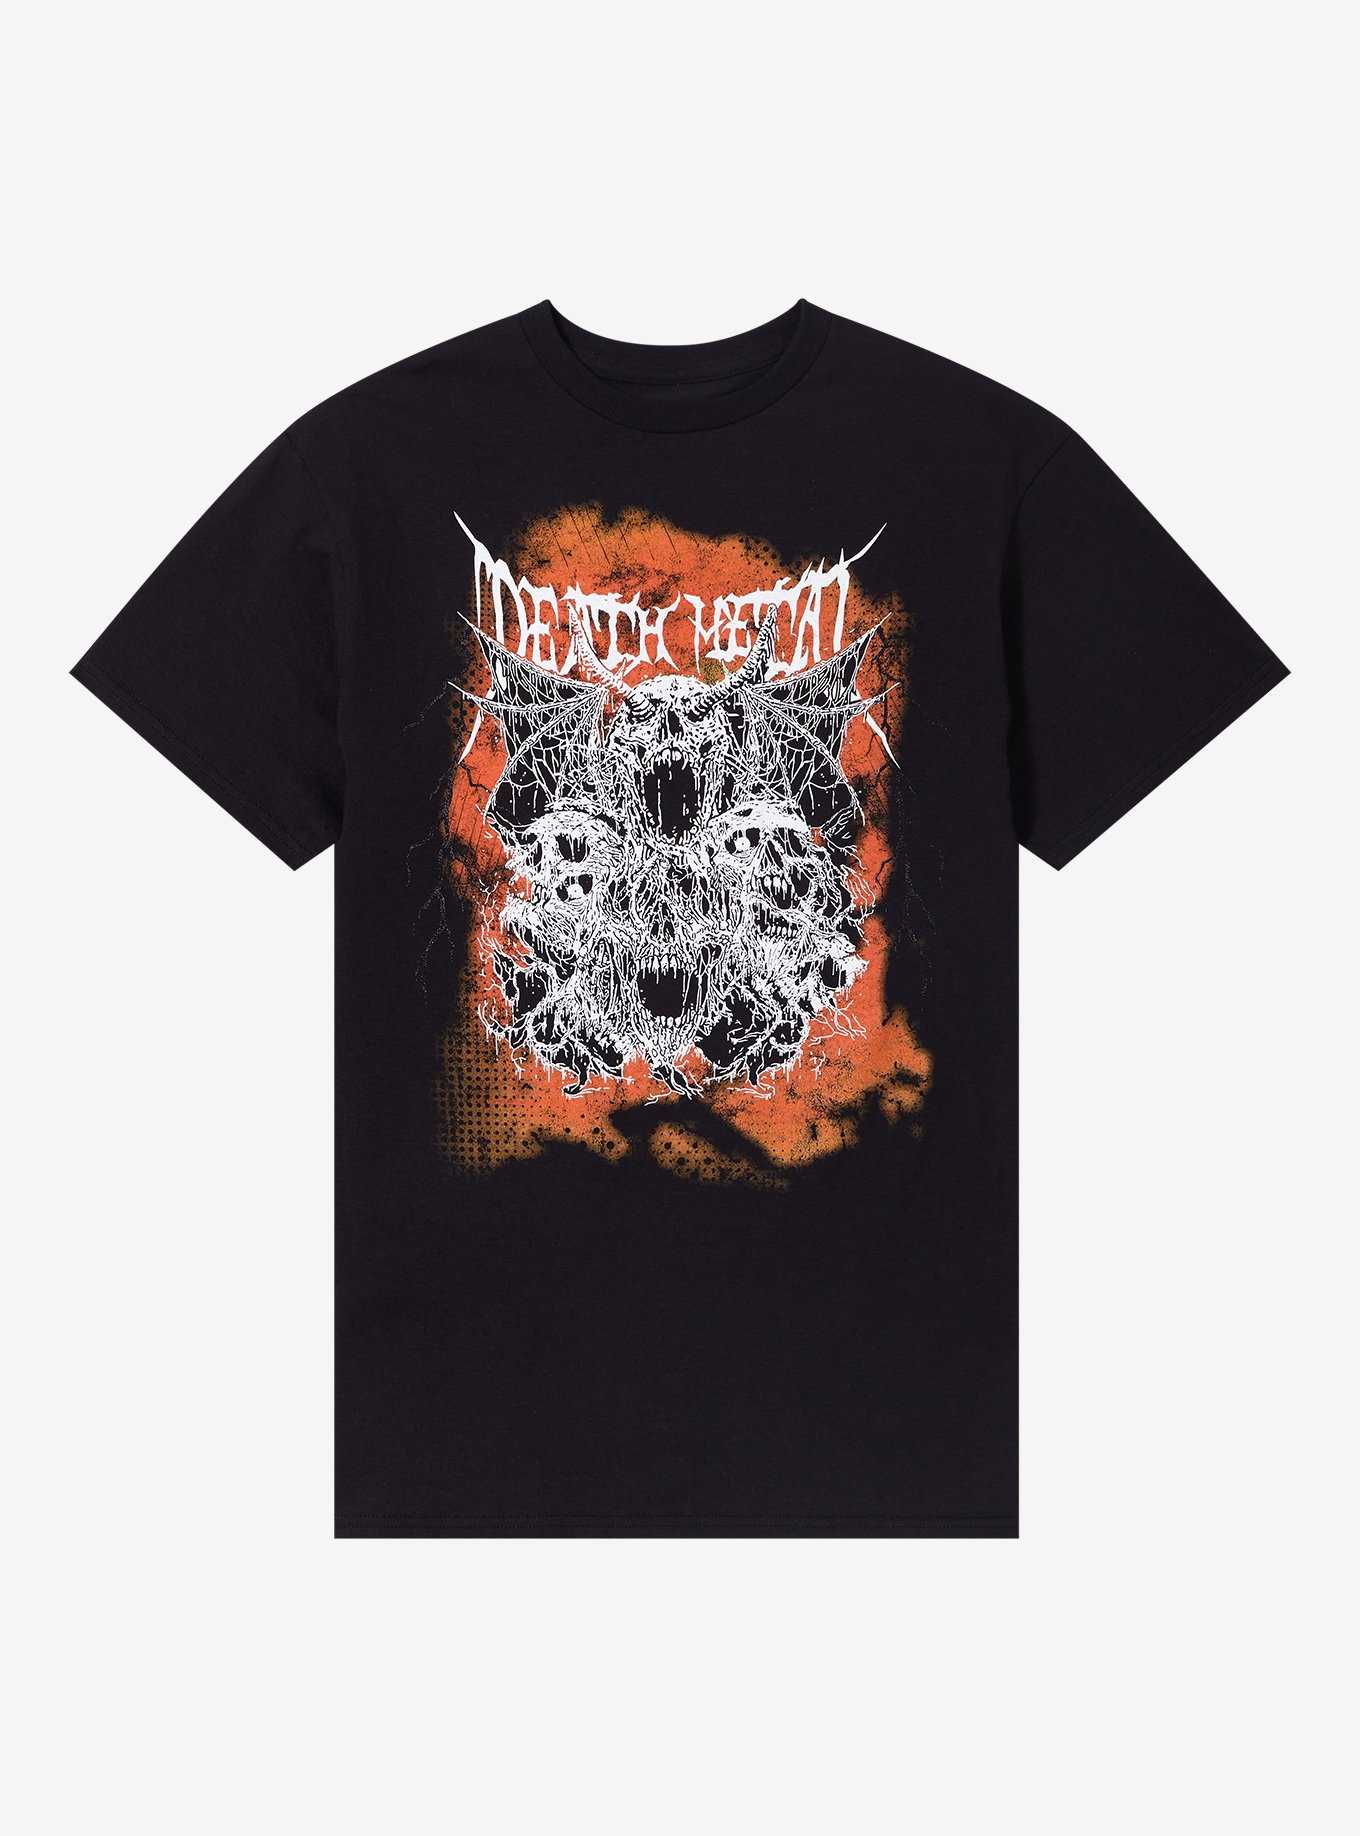 Death Metal Dripping Skulls T-Shirt, , hi-res